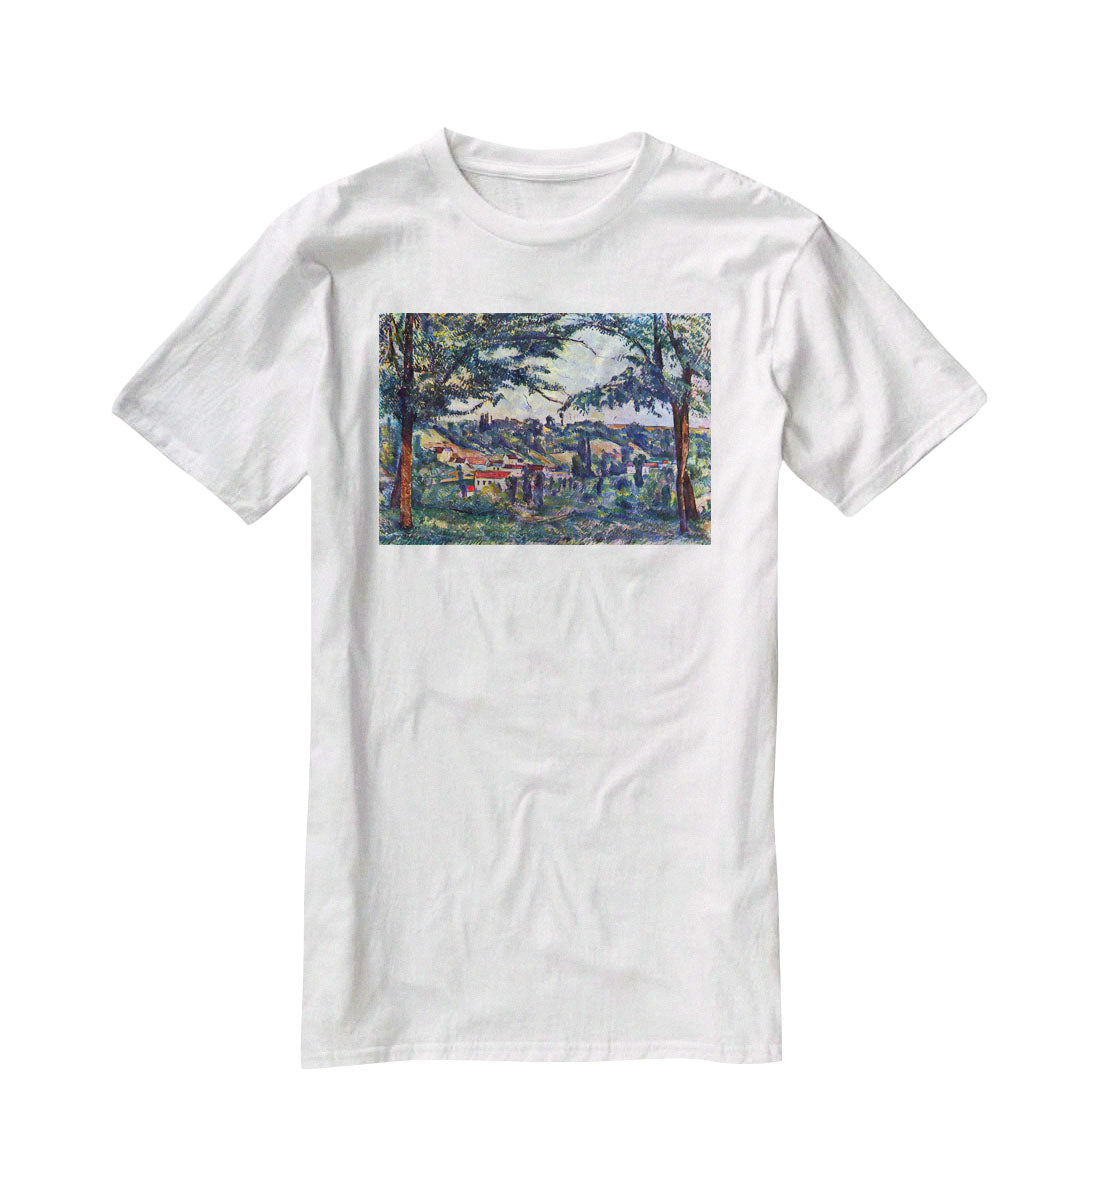 Le Chateau Noir by Cezanne T-Shirt - Canvas Art Rocks - 5